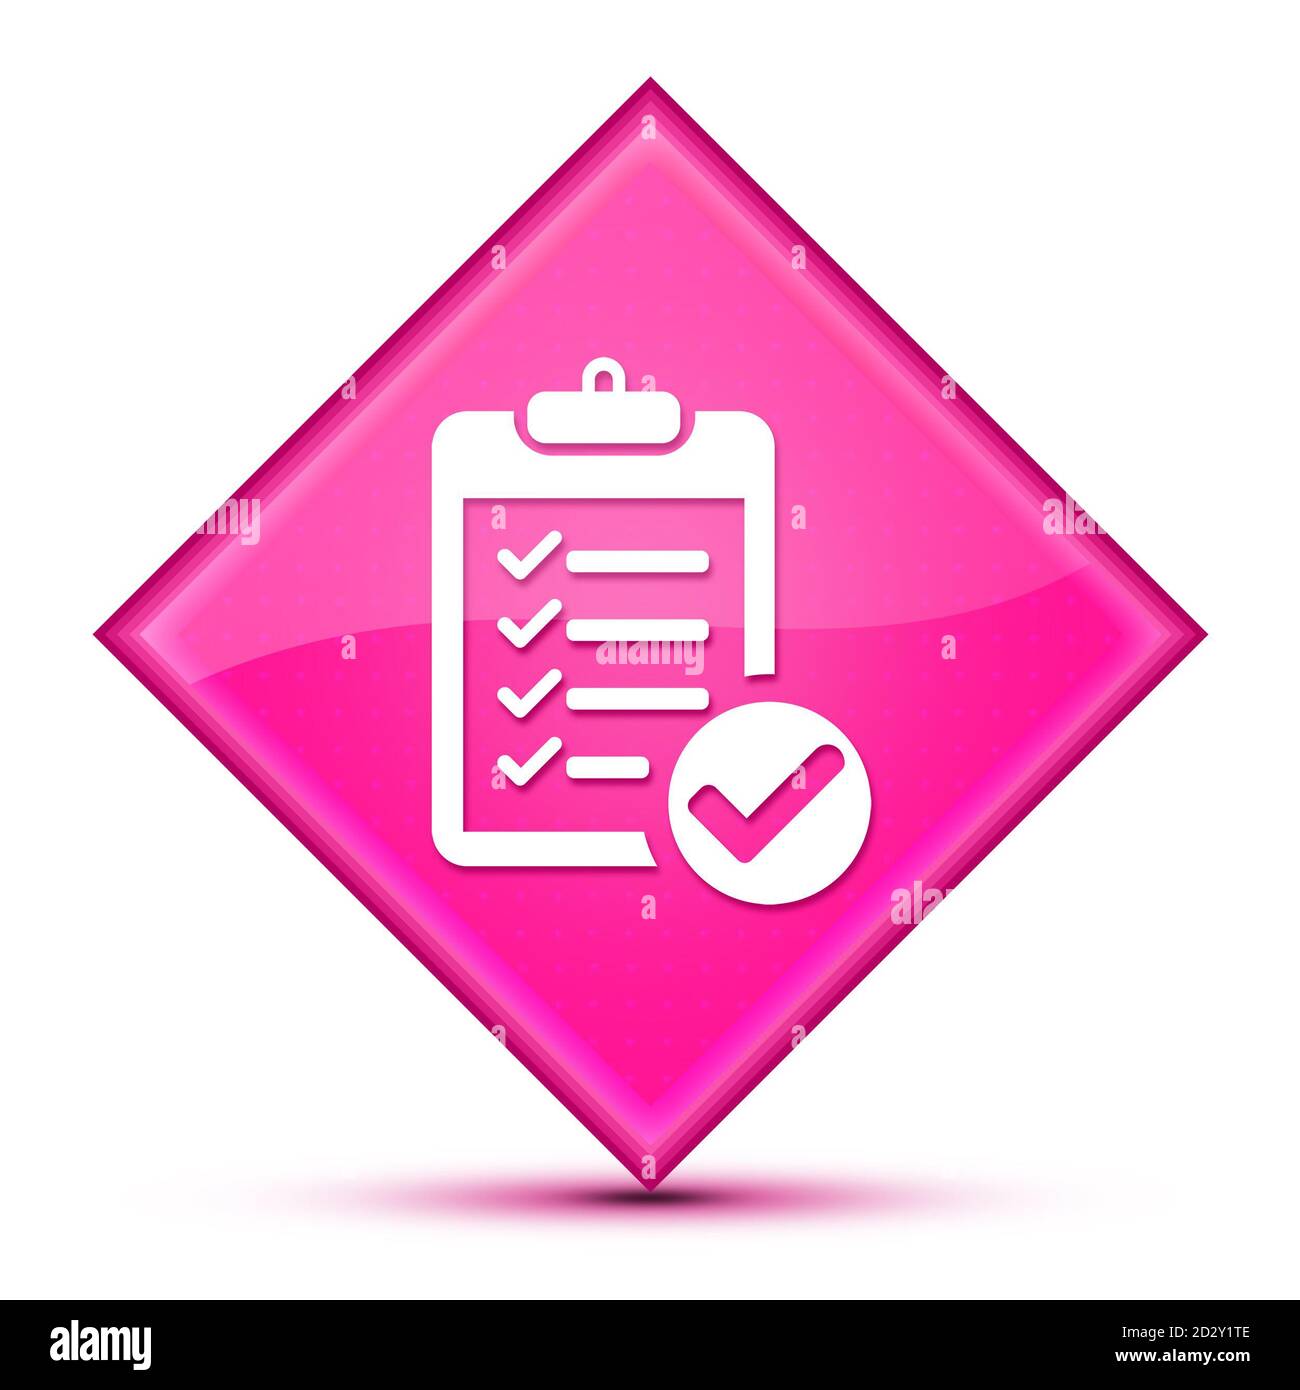 Icona della lista di controllo isolata su lussuoso astratto a forma di diamante rosa ondulato illustrazione Foto Stock